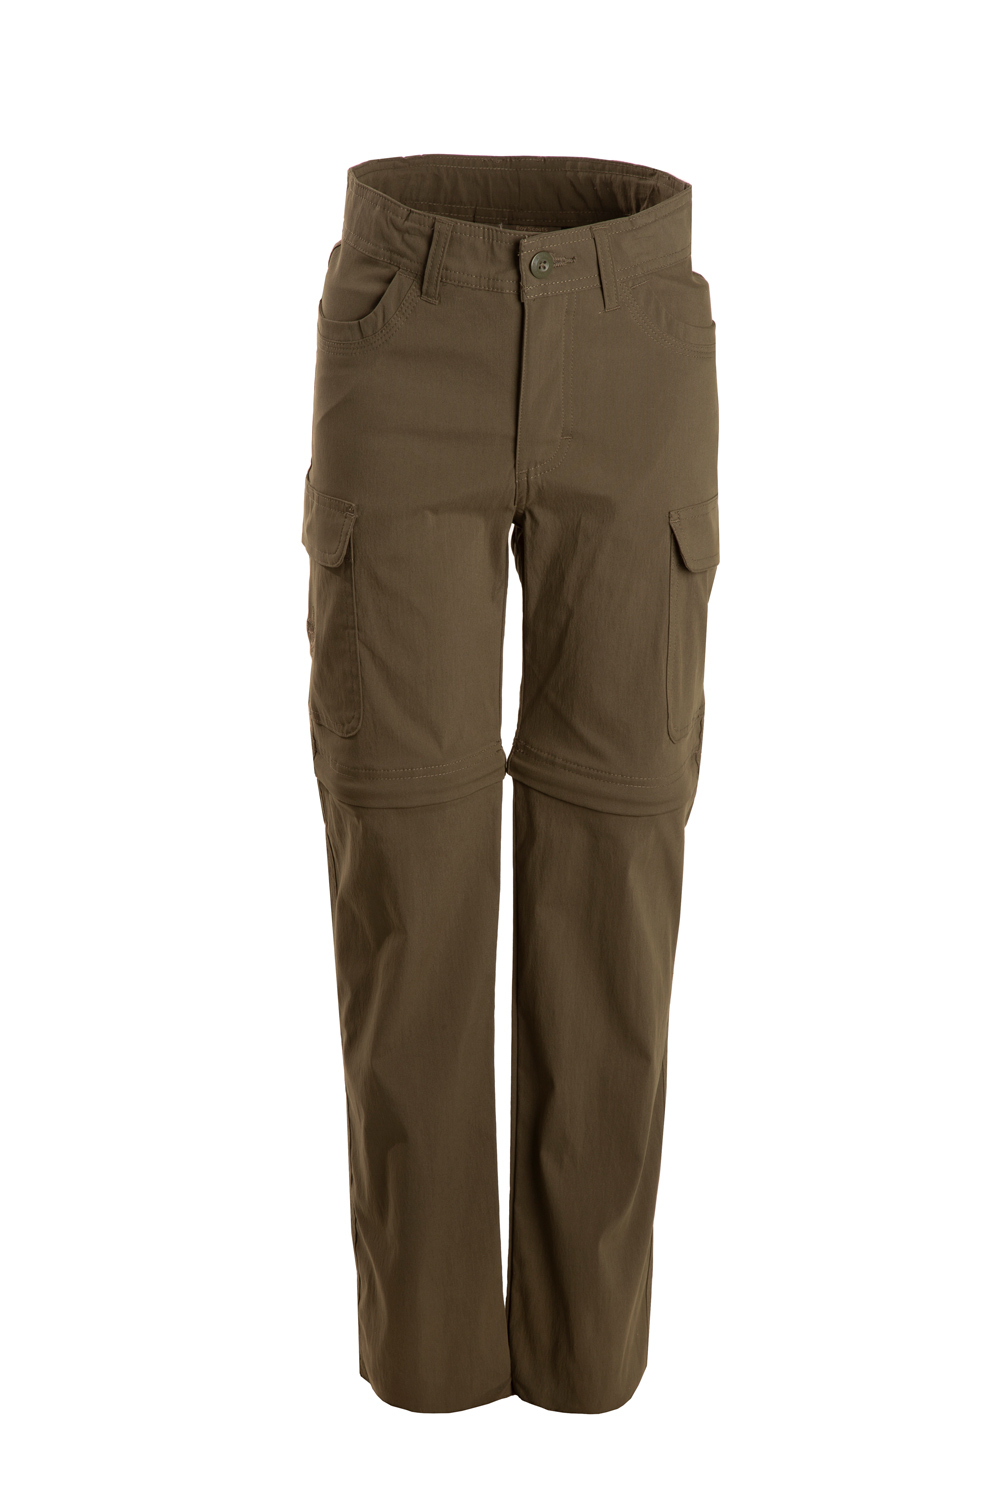 Scouts BSA Switchback Uniform Pant, Boys